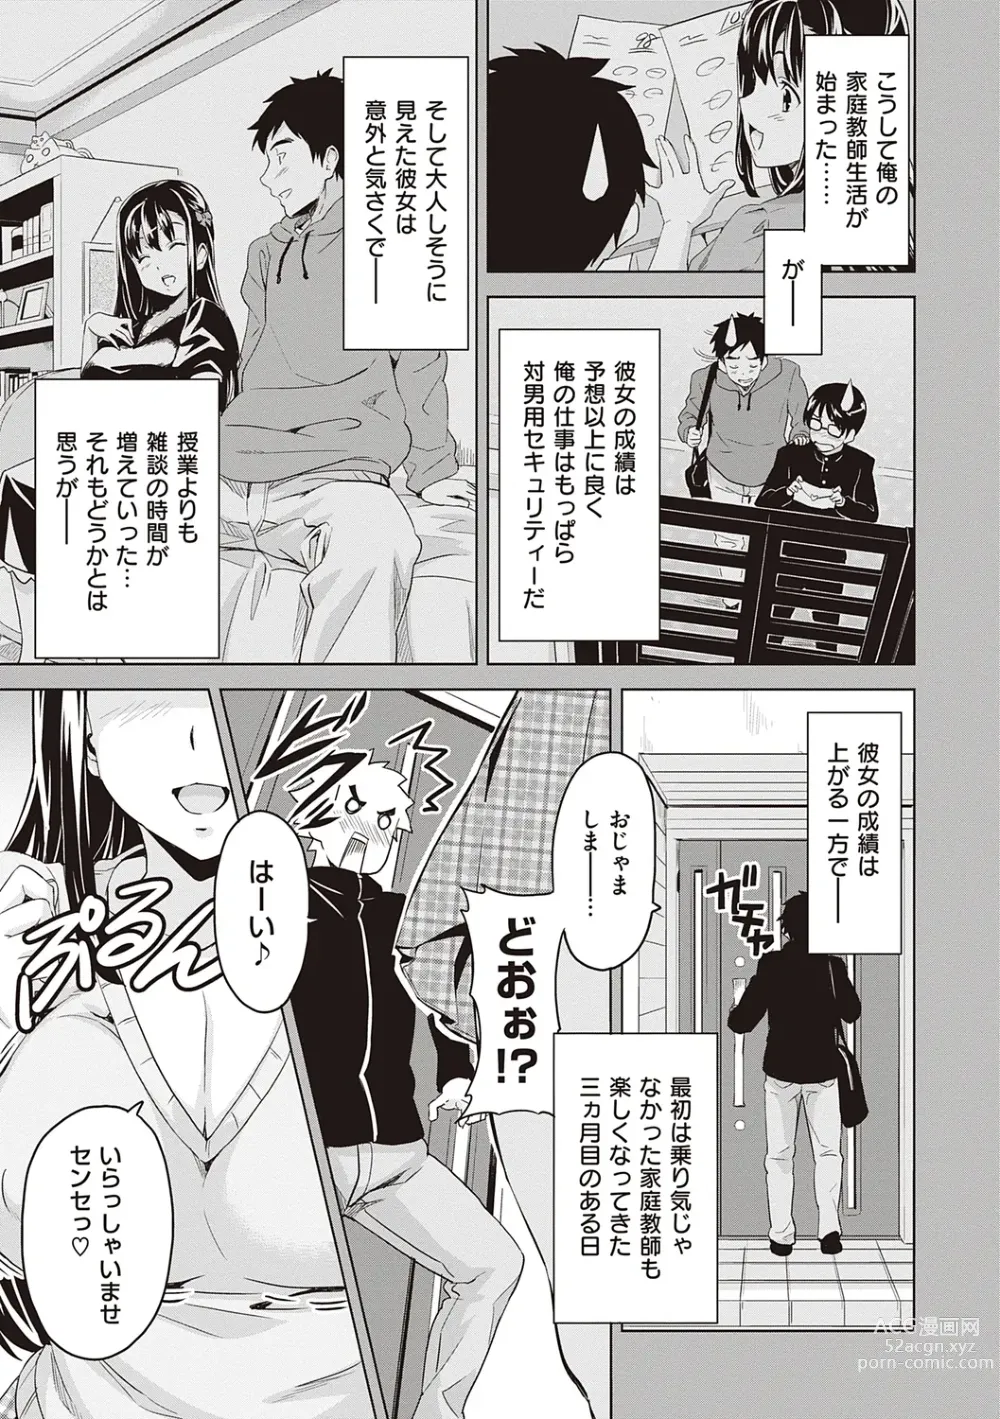 Page 17 of manga Tsundero Shinsouban